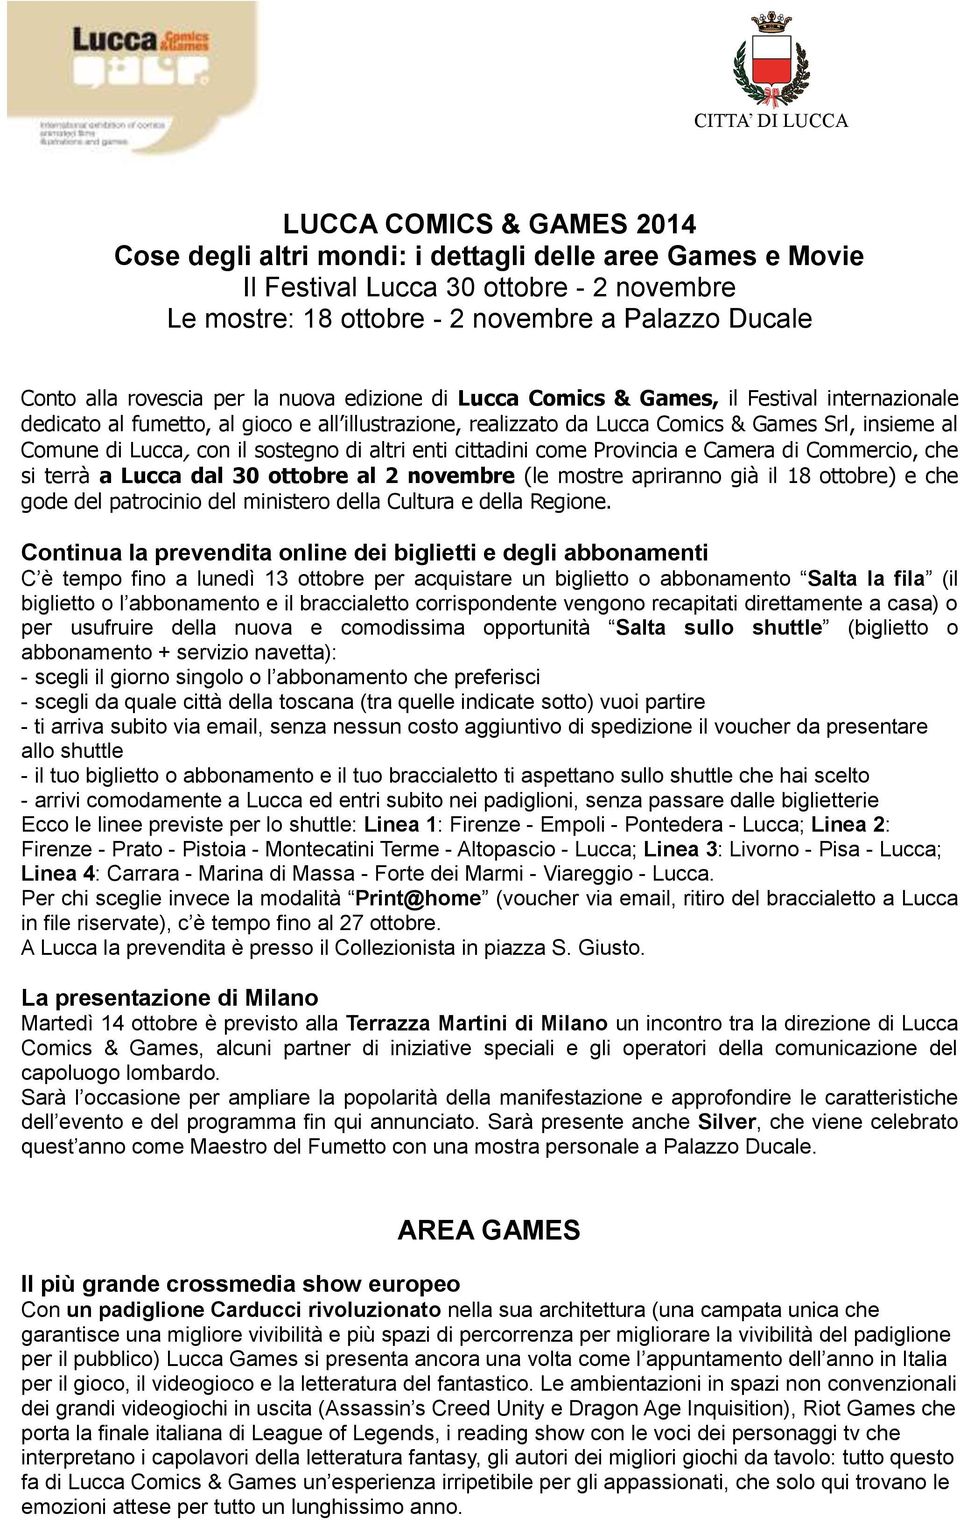 Comune di Lucca, con il sostegno di altri enti cittadini come Provincia e Camera di Commercio, che si terrà a Lucca dal 30 ottobre al 2 novembre (le mostre apriranno già il 18 ottobre) e che gode del